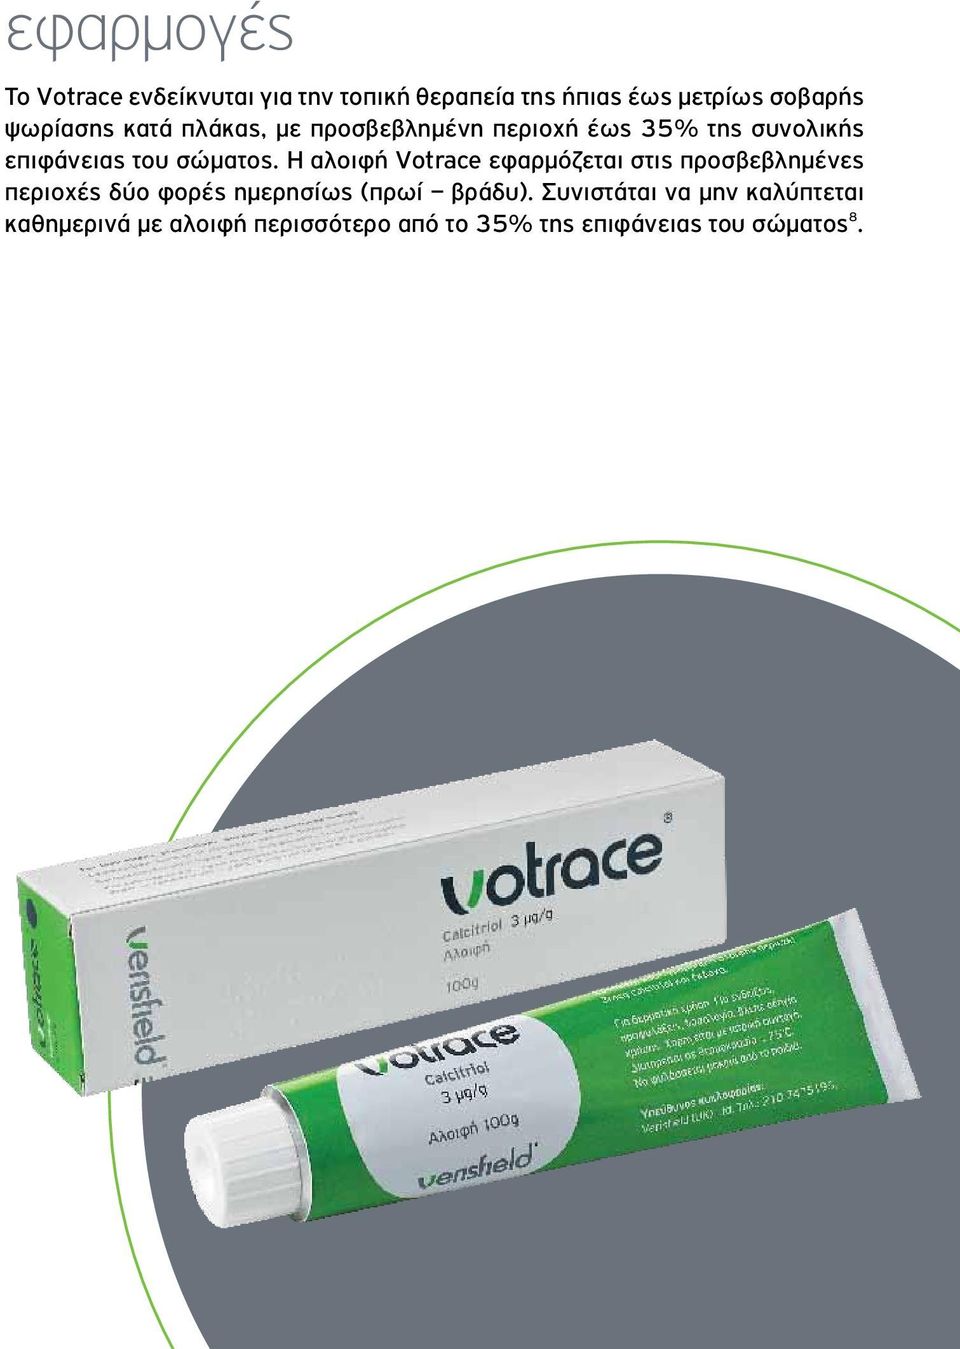 Η αλοιφή Votrace εφαρμόζεται στις προσβεβλημένες περιοχές δύο φορές ημερησίως (πρωί βράδυ).